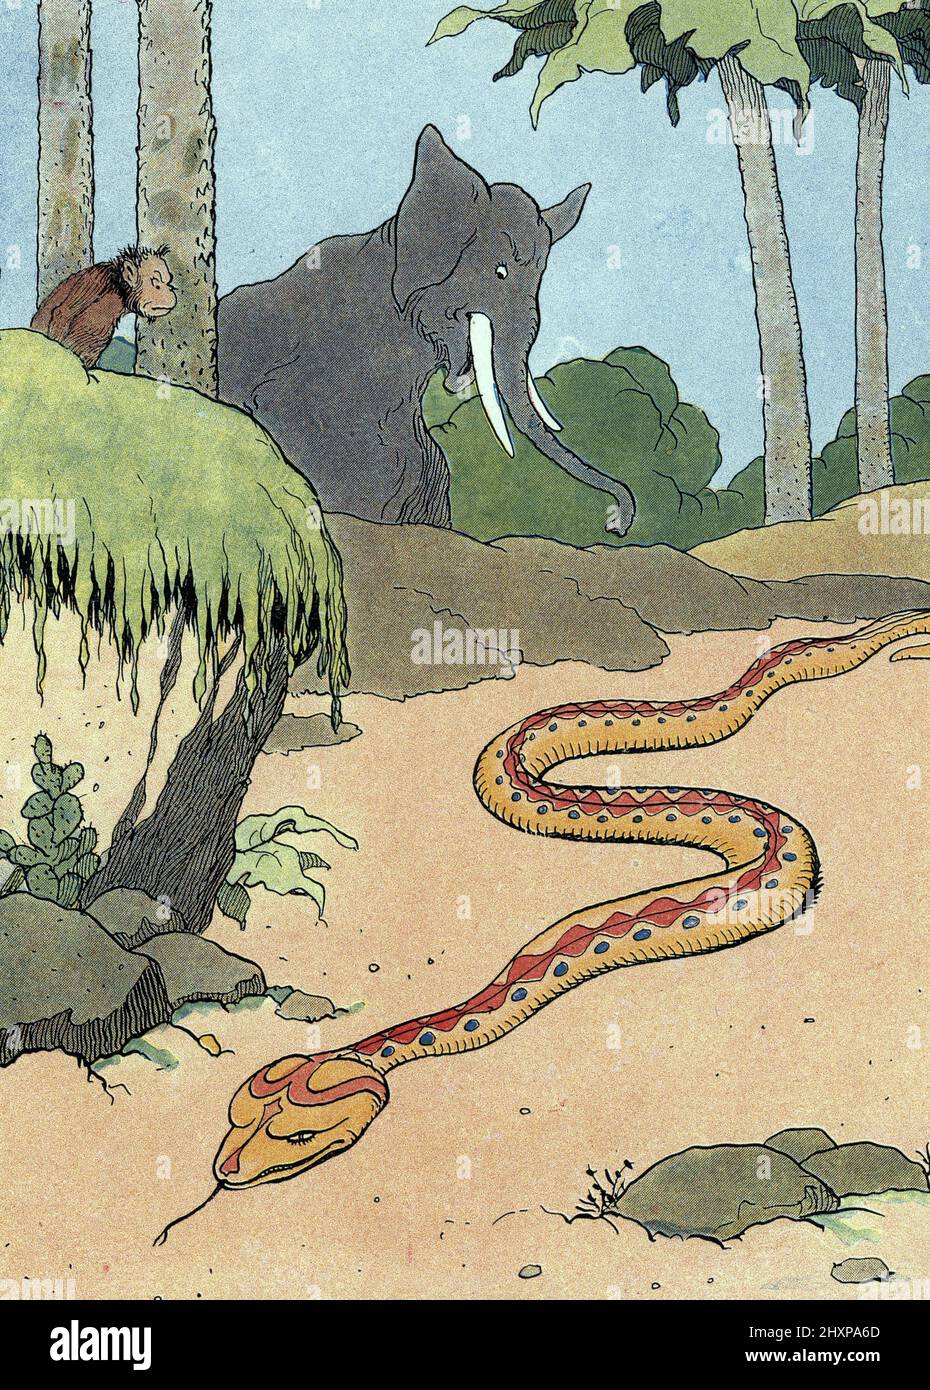 Representation du serpent du jardin d'Eden (The snake in Eden) Illustration de Benjamin Rabier (mort en 1939) pour 'les animaux historiques' 1926 Collection privee Stock Photo